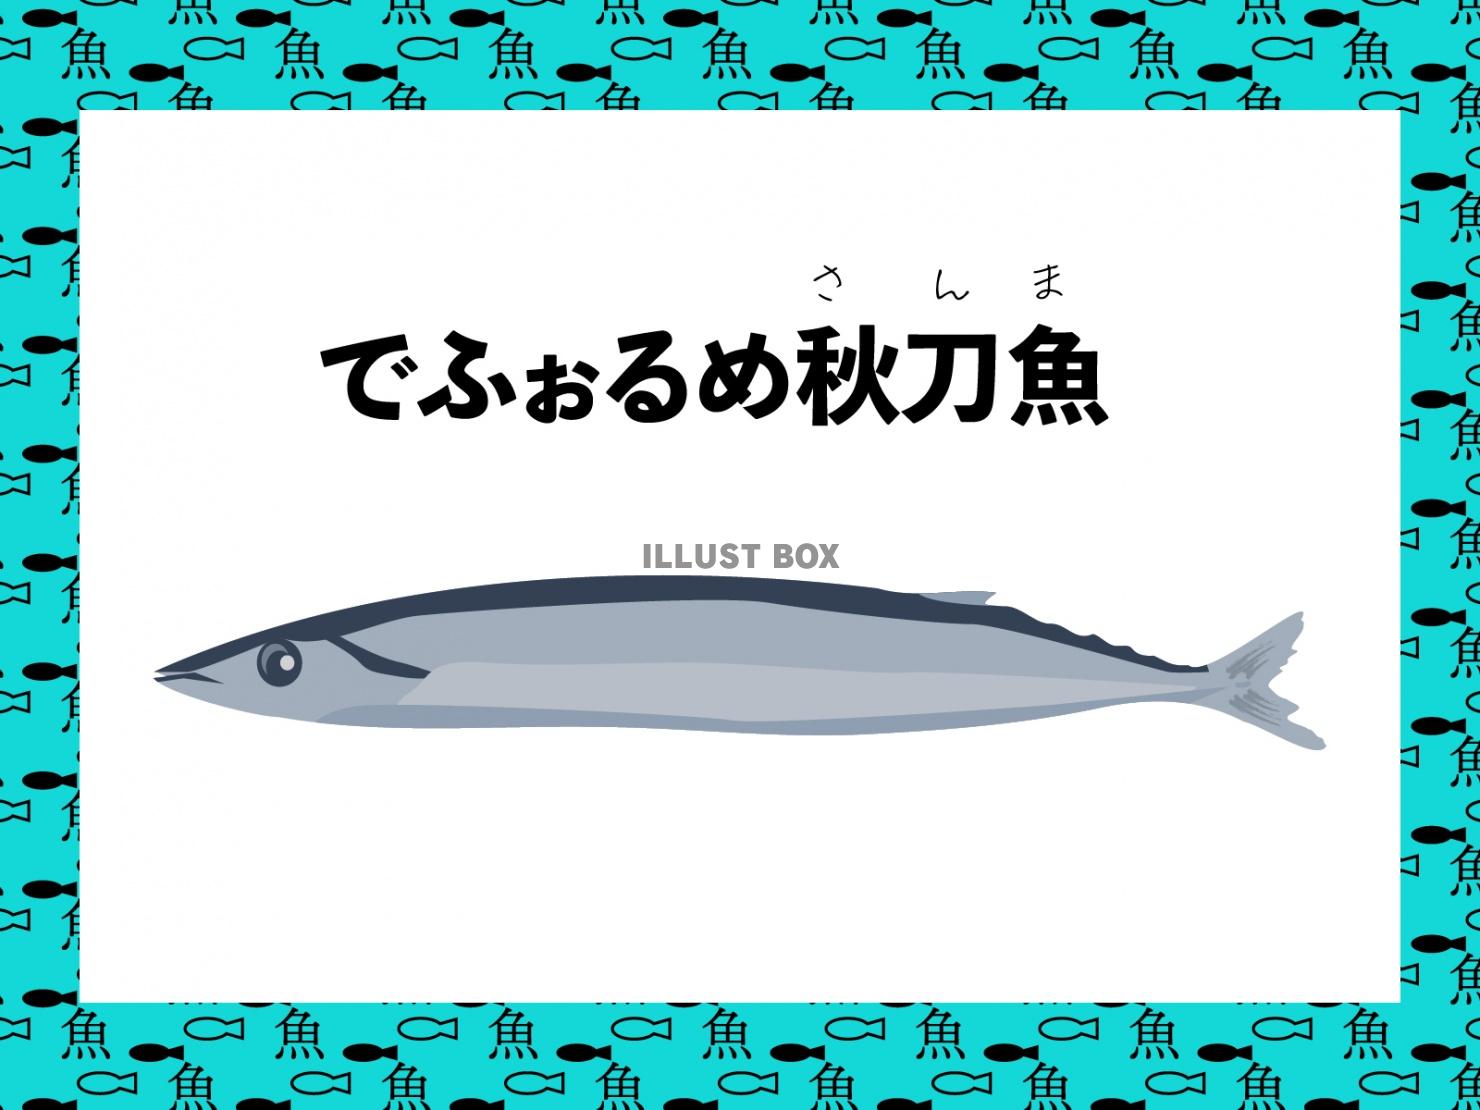 デフォルメの秋刀魚(さんま)イラスト